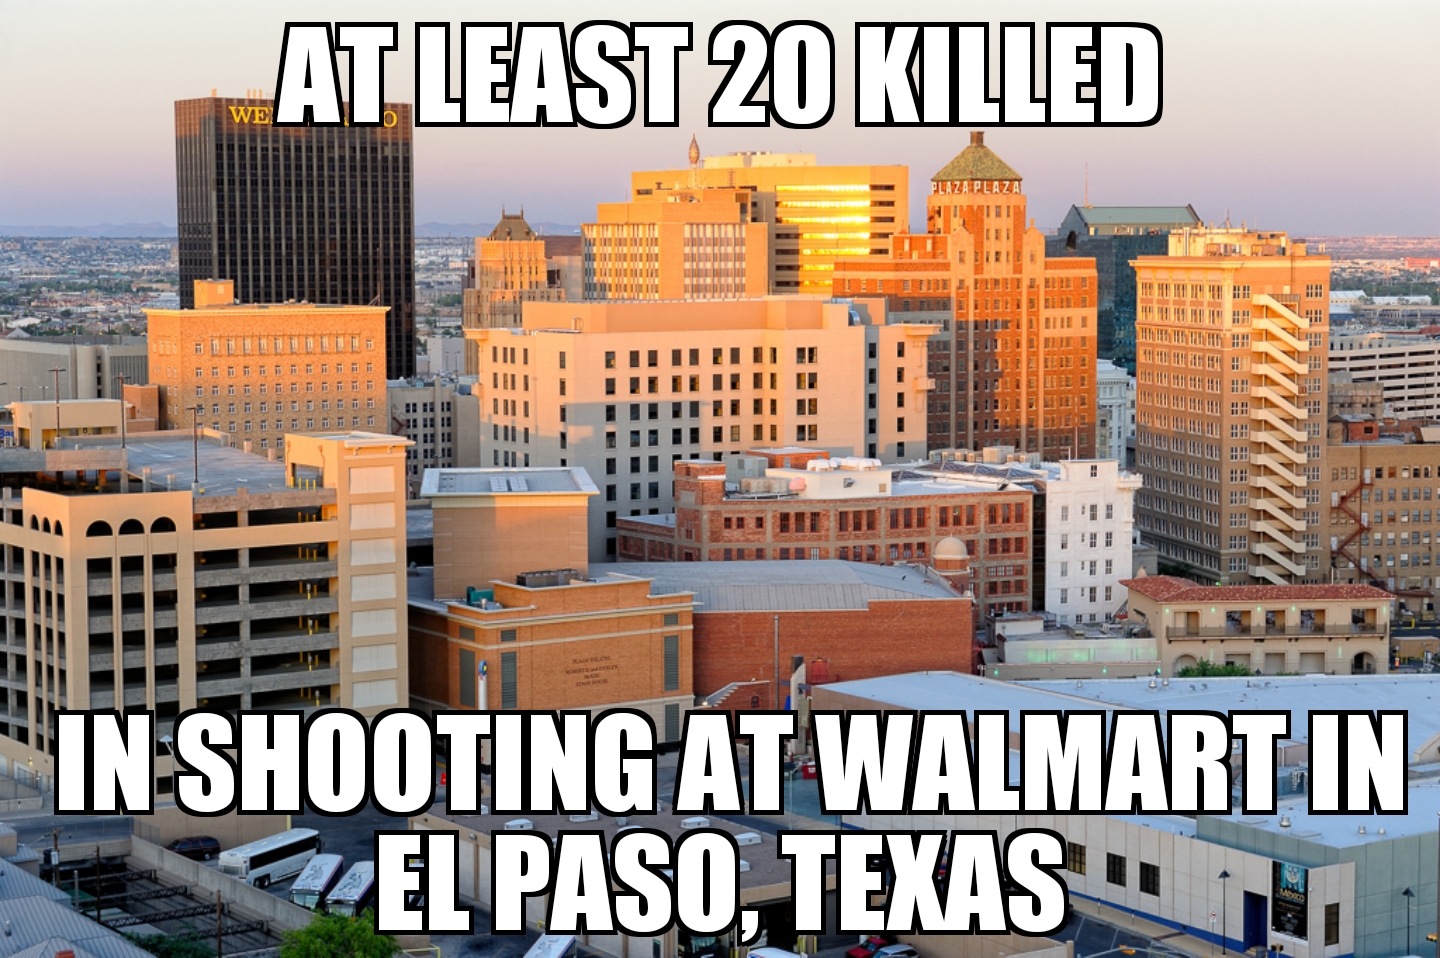 El Paso Walmart shooting